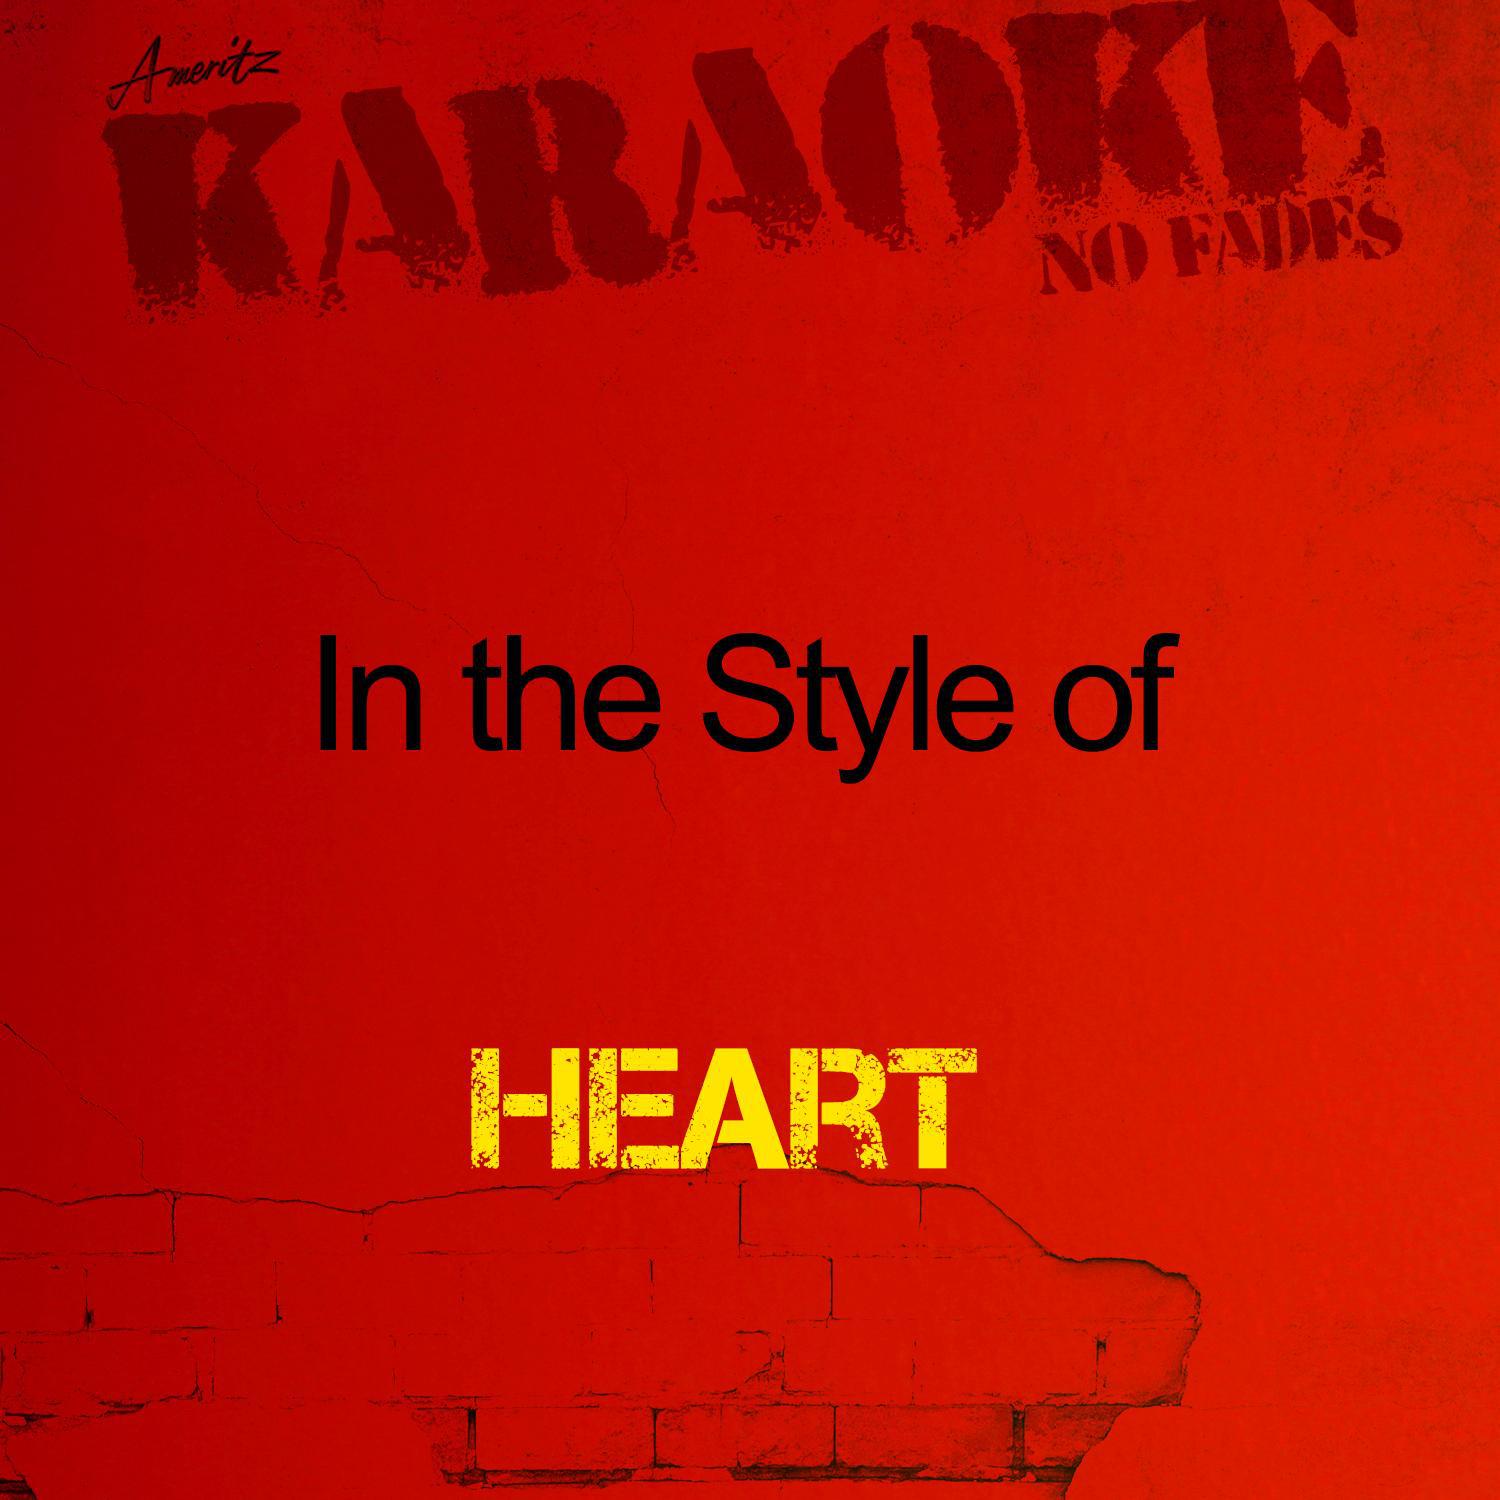 Karaoke (In the Style of Heart)